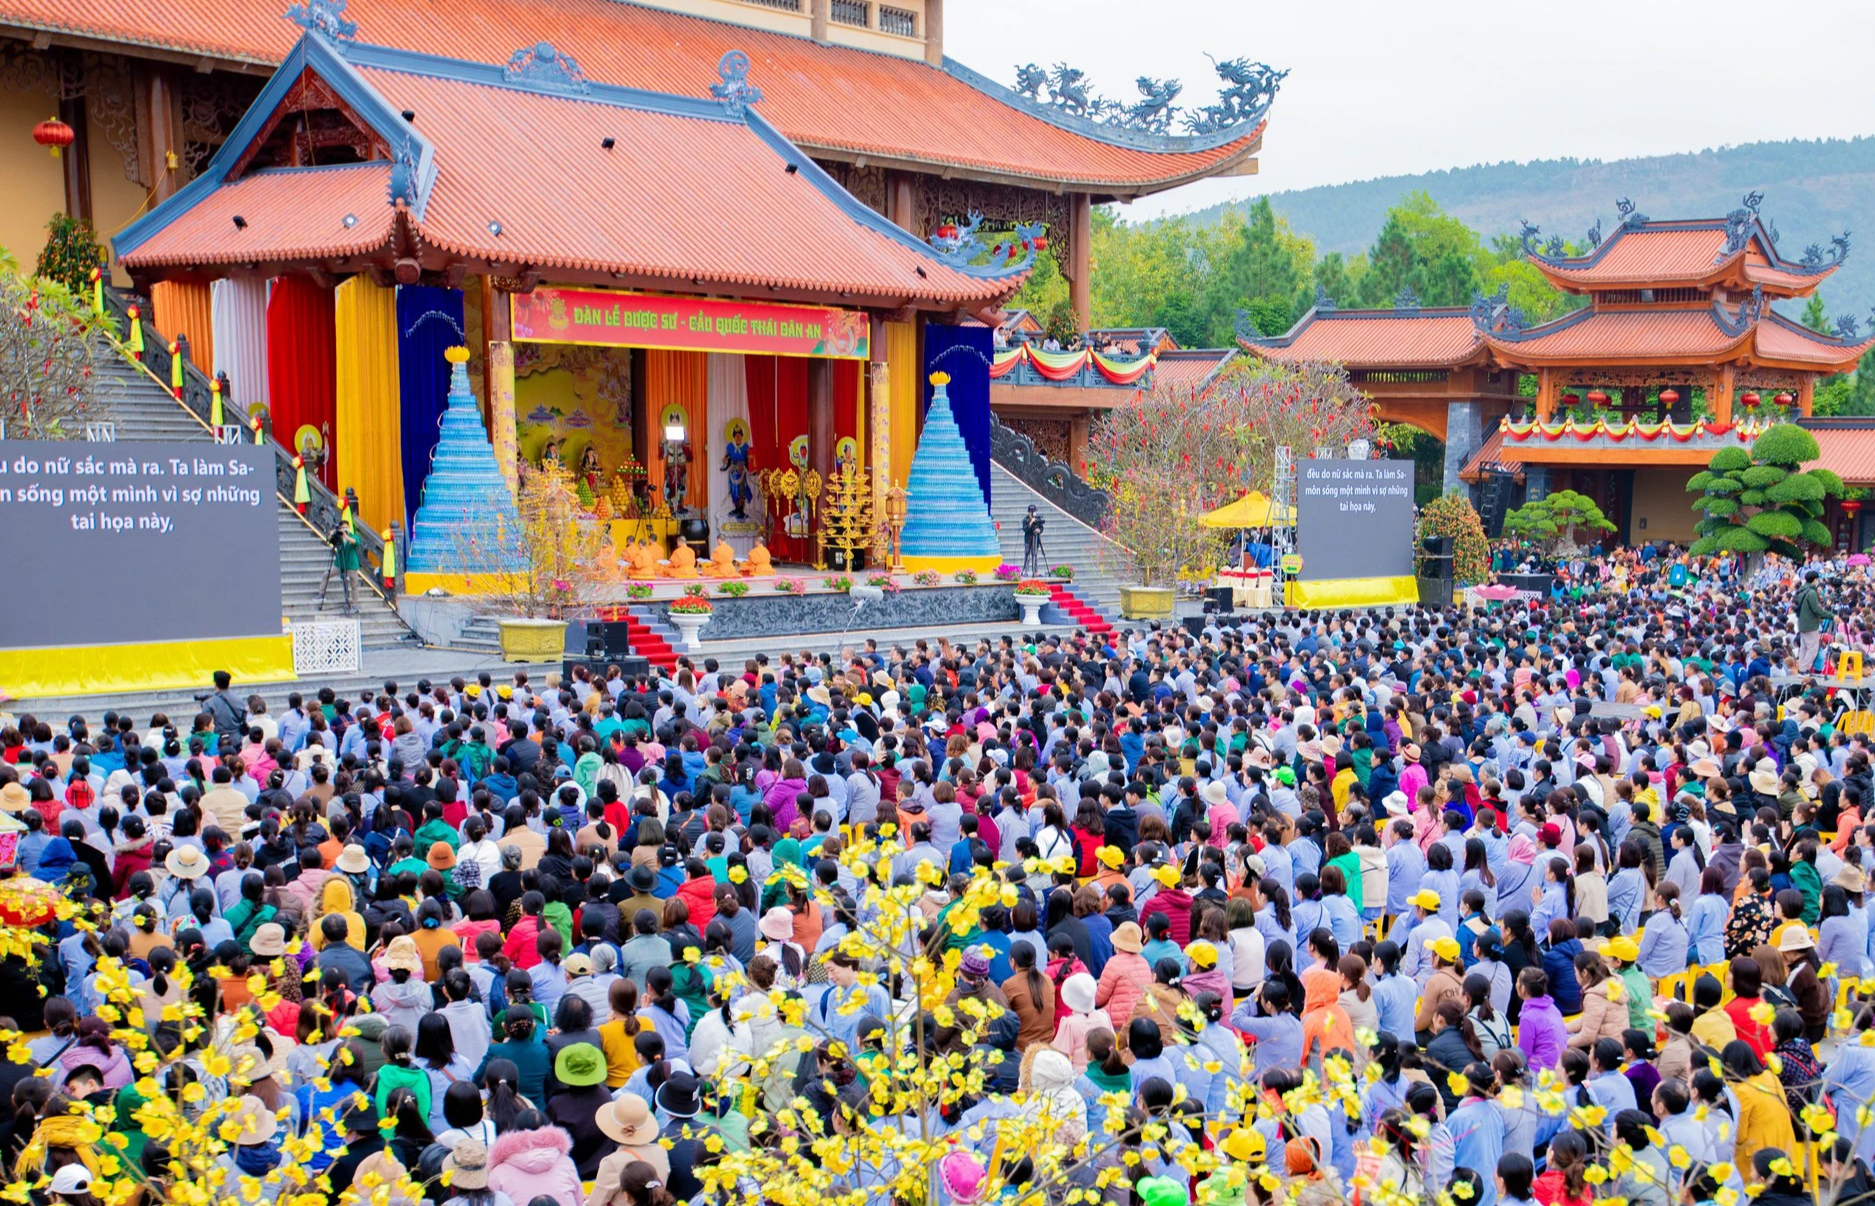 Kết quả giám sát việc tổ chức lễ hội dịp Tết Nguyên đán tại chùa Ba Vàng- Ảnh 1.